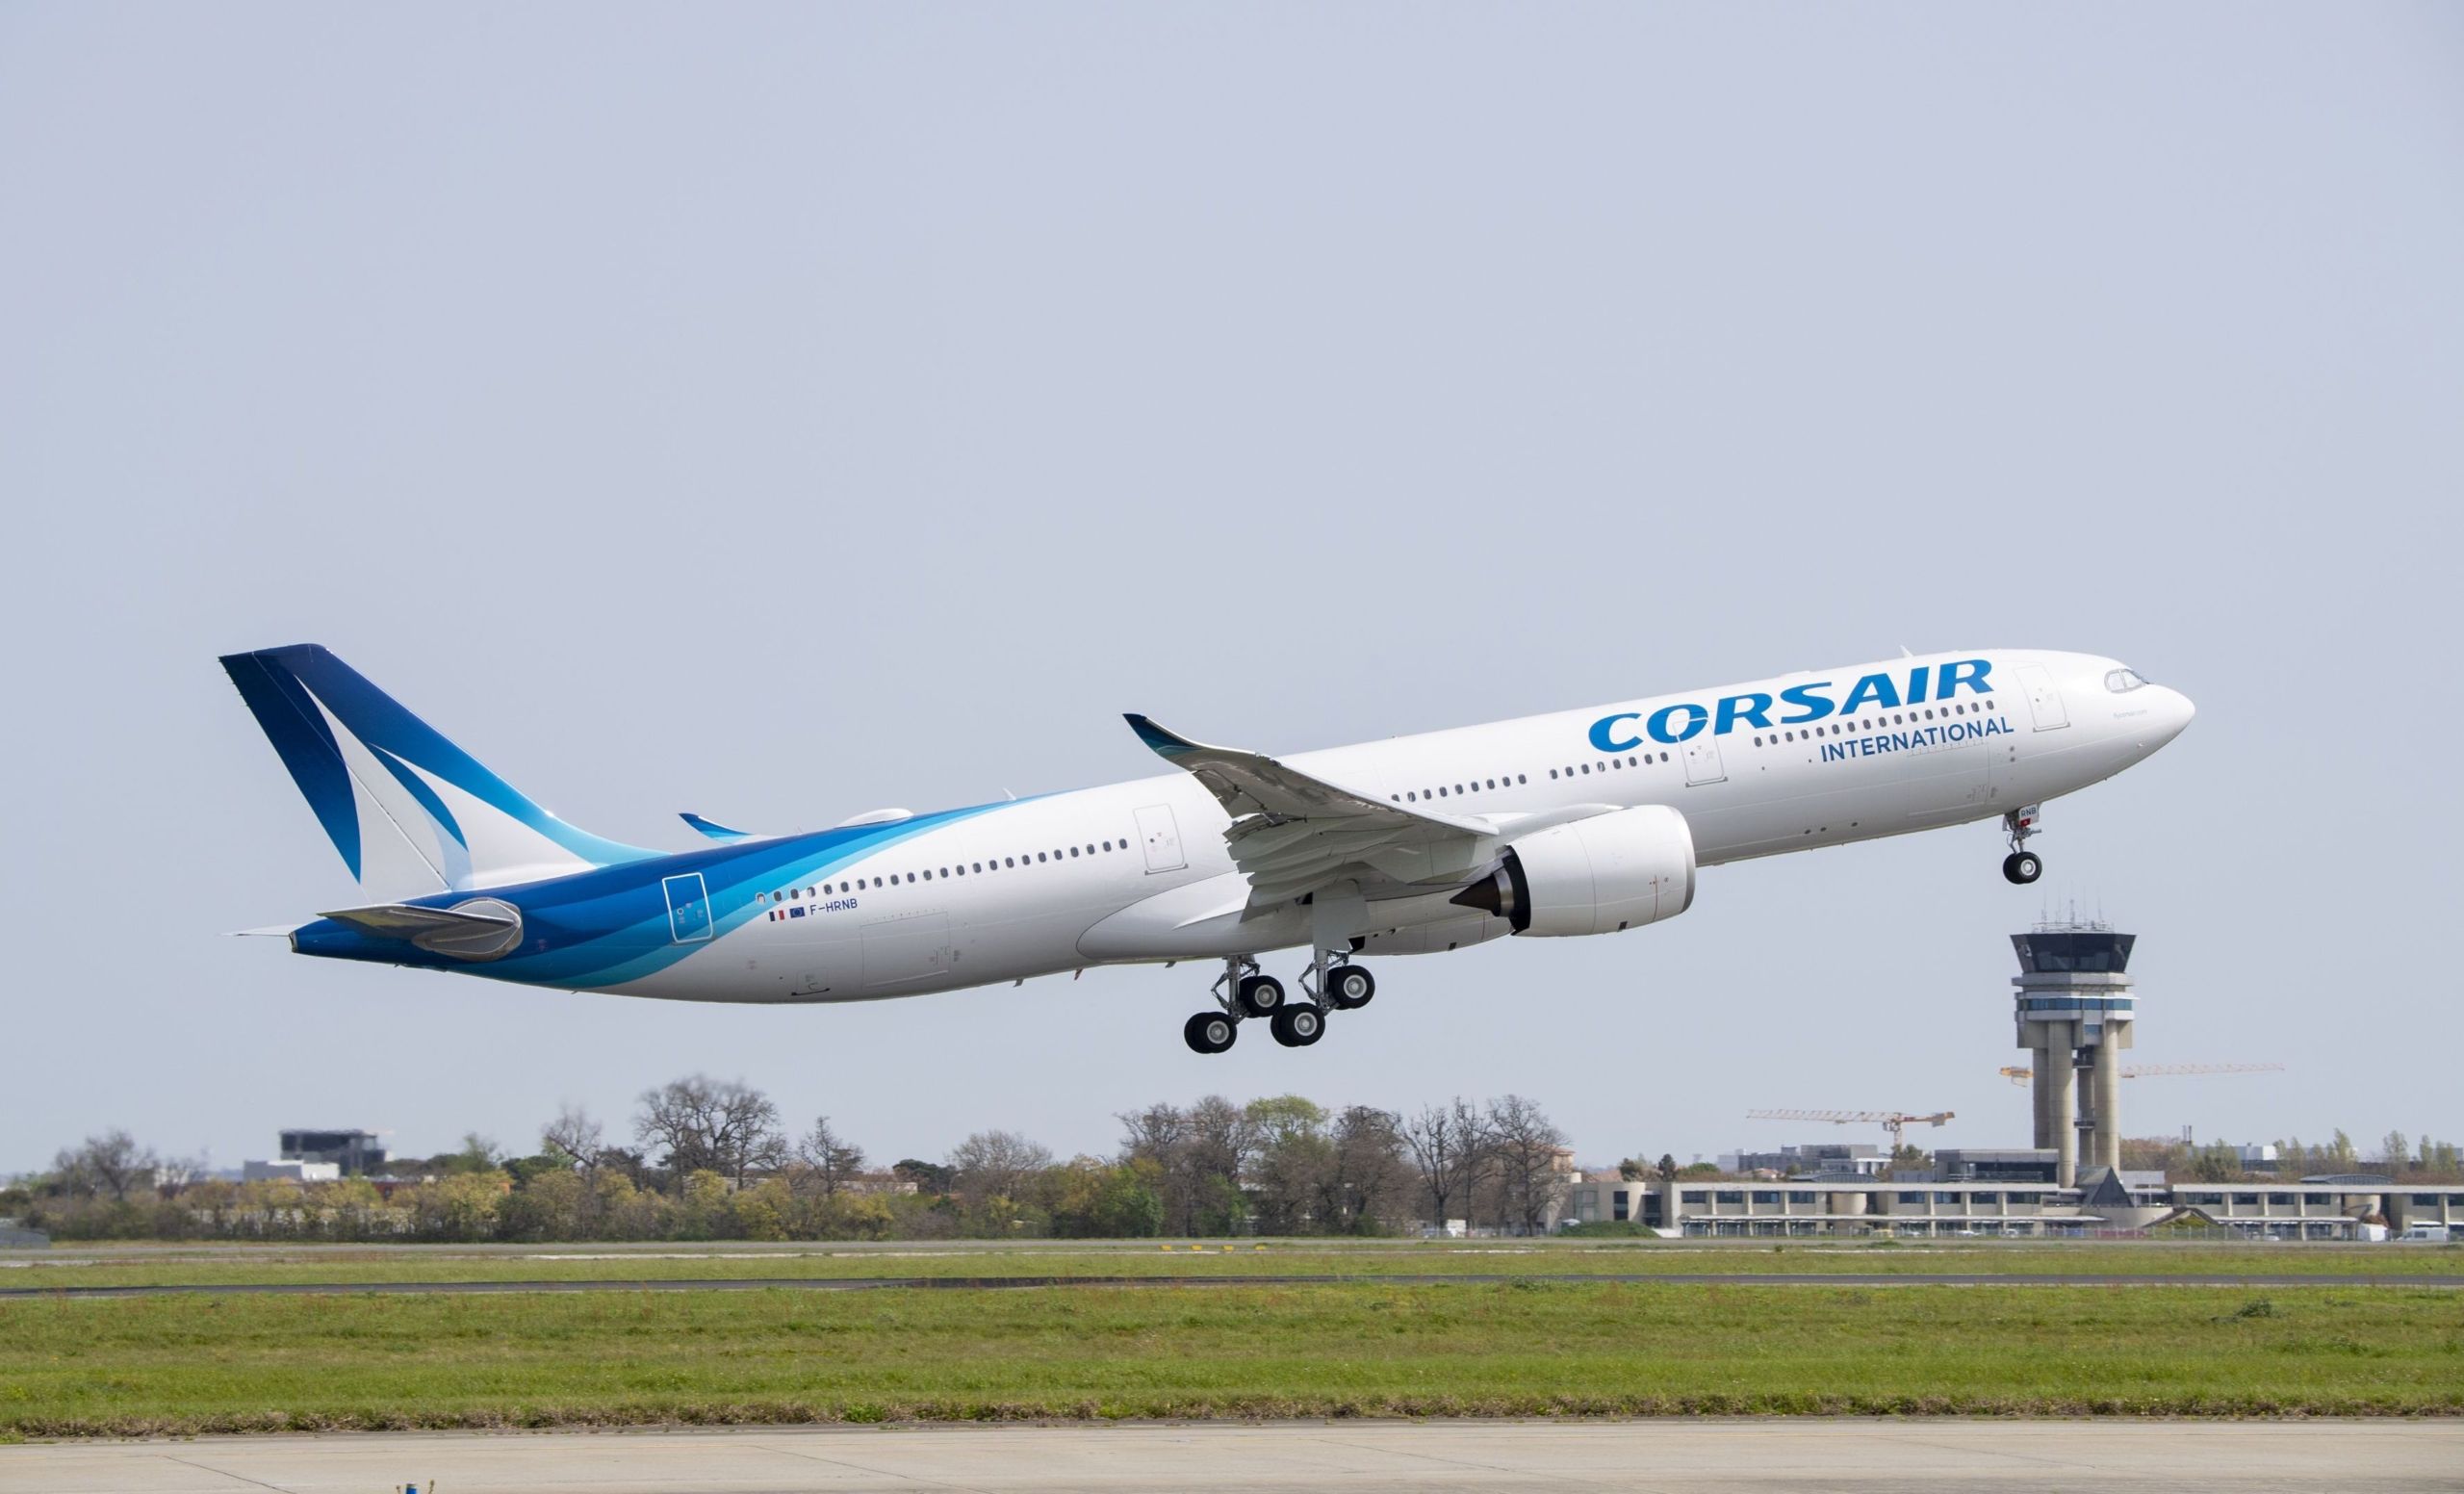 Corsair’s first A330neo